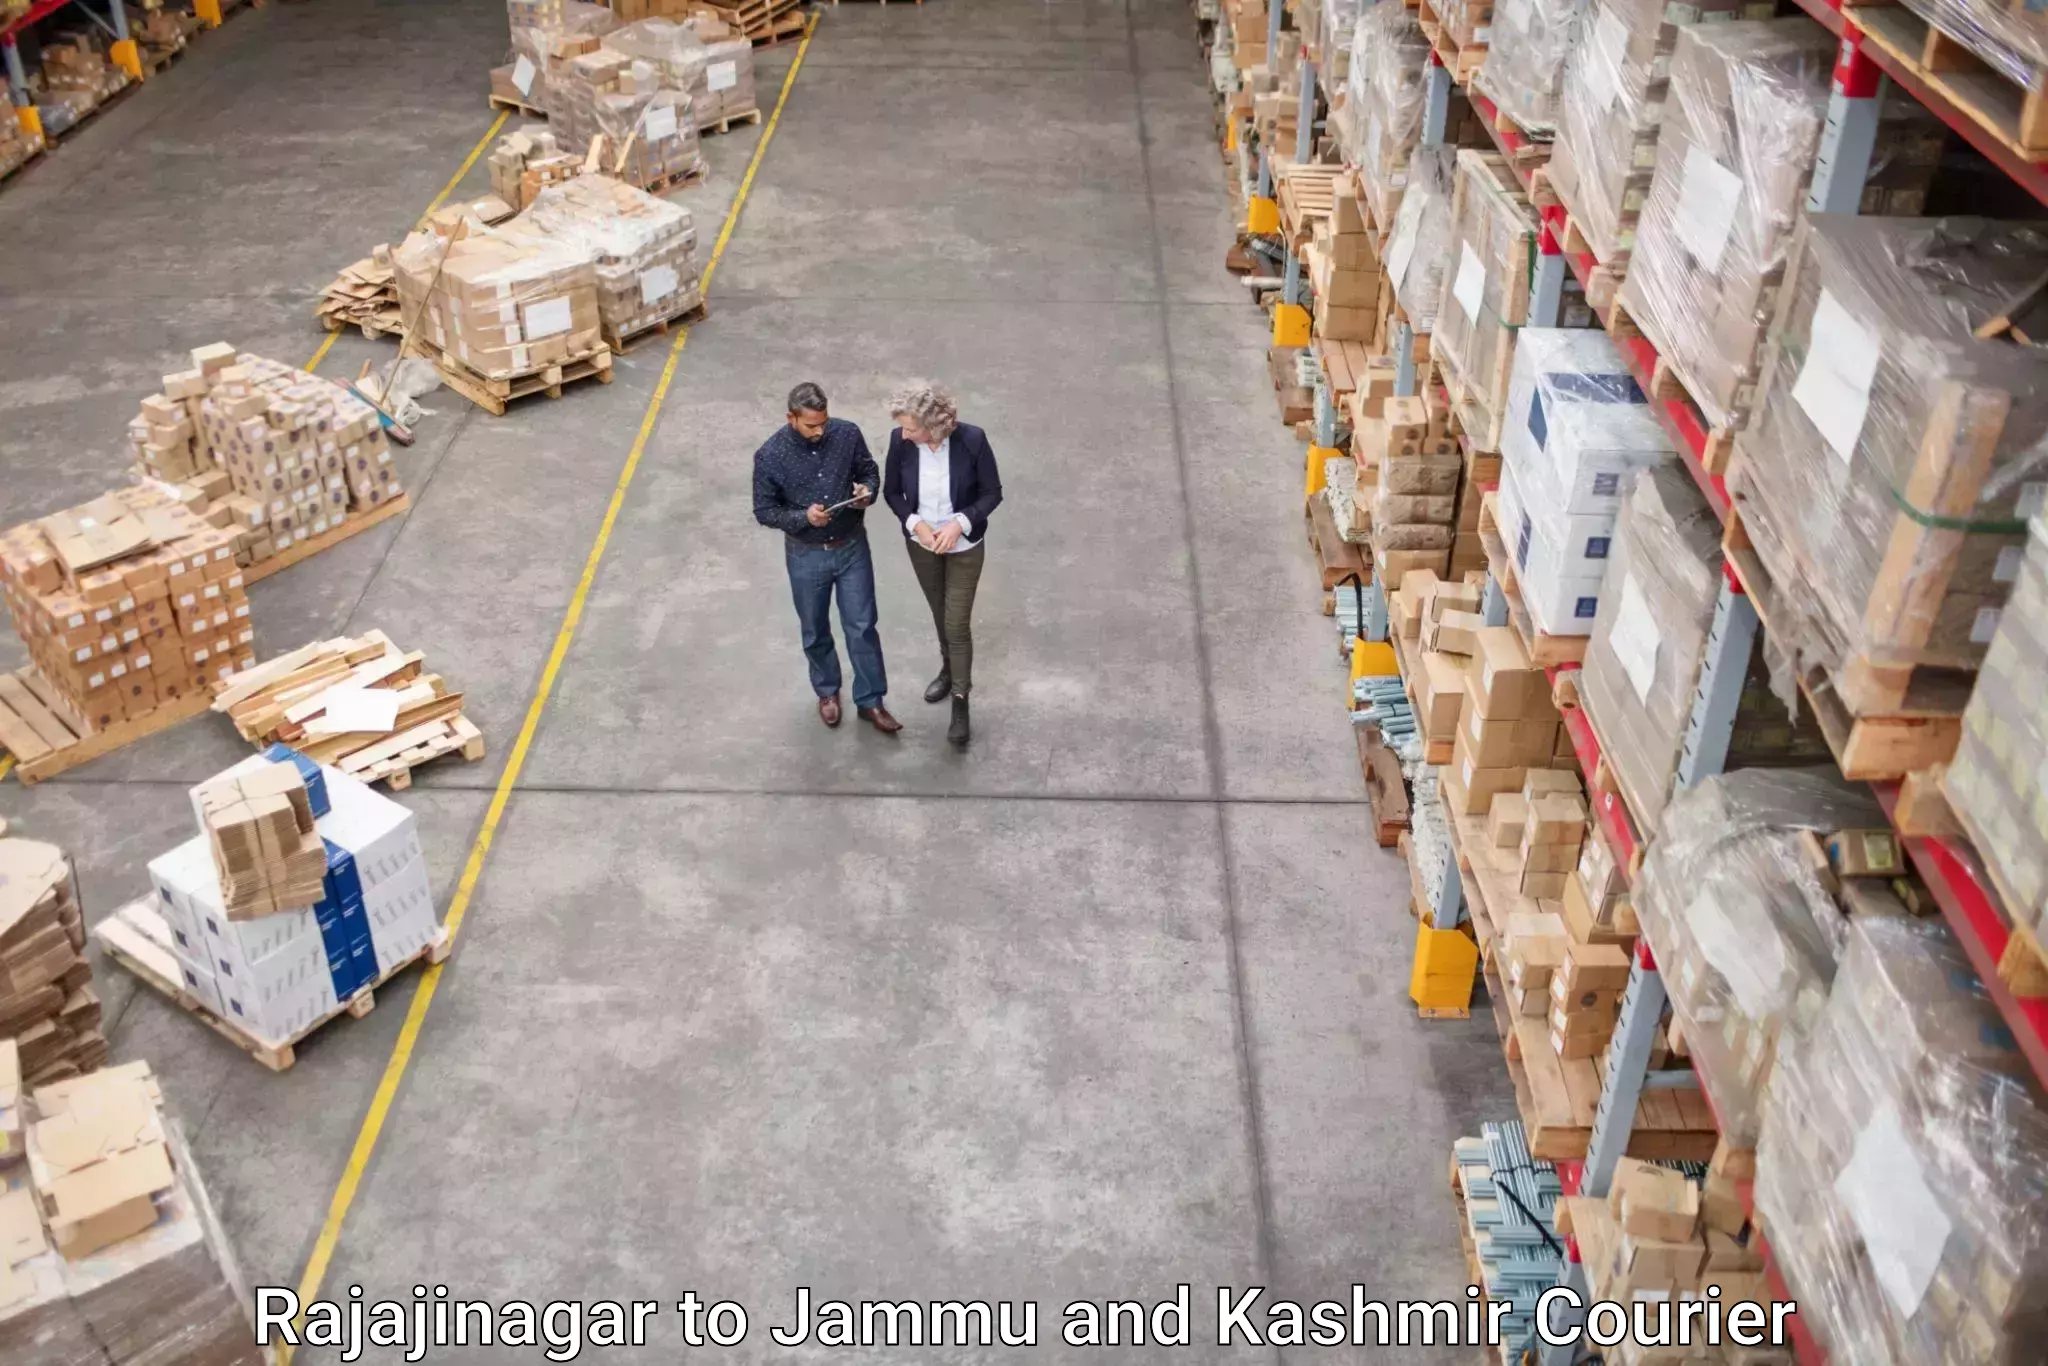 Pharmaceutical courier Rajajinagar to Jammu and Kashmir